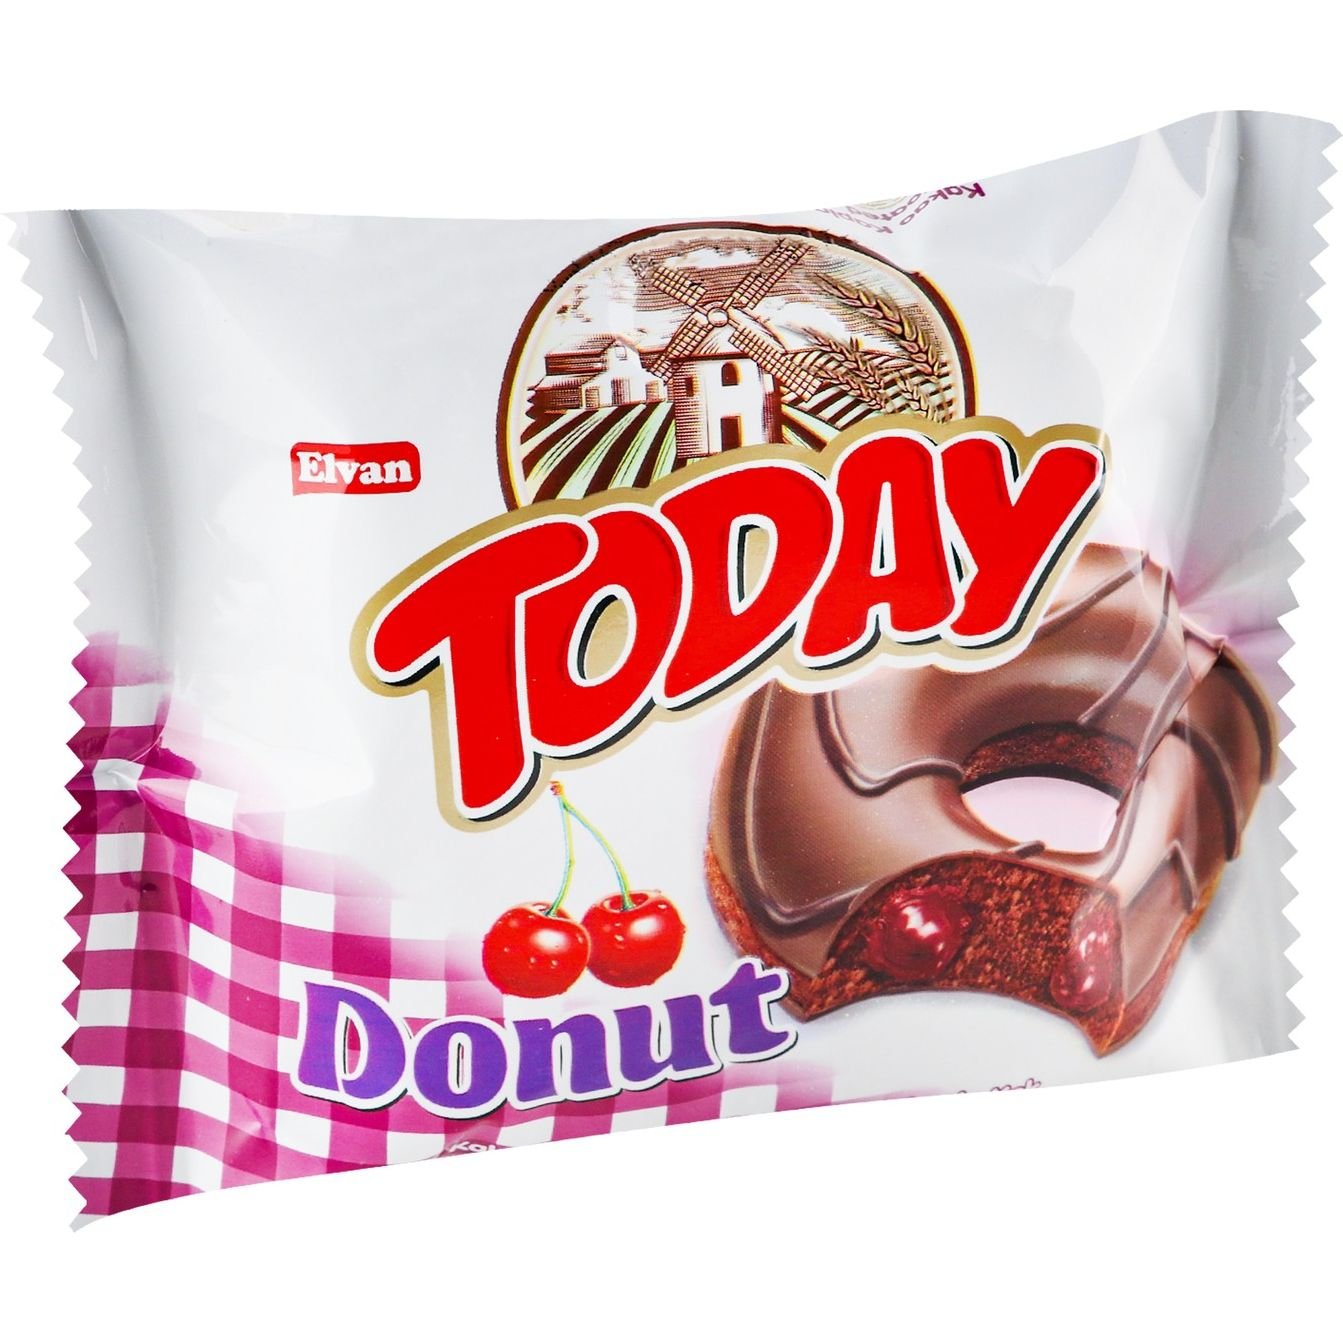 Пончик Elvan Today Donut з вишневим кремом у шоколадній глазурі 50 г (756619) - фото 2